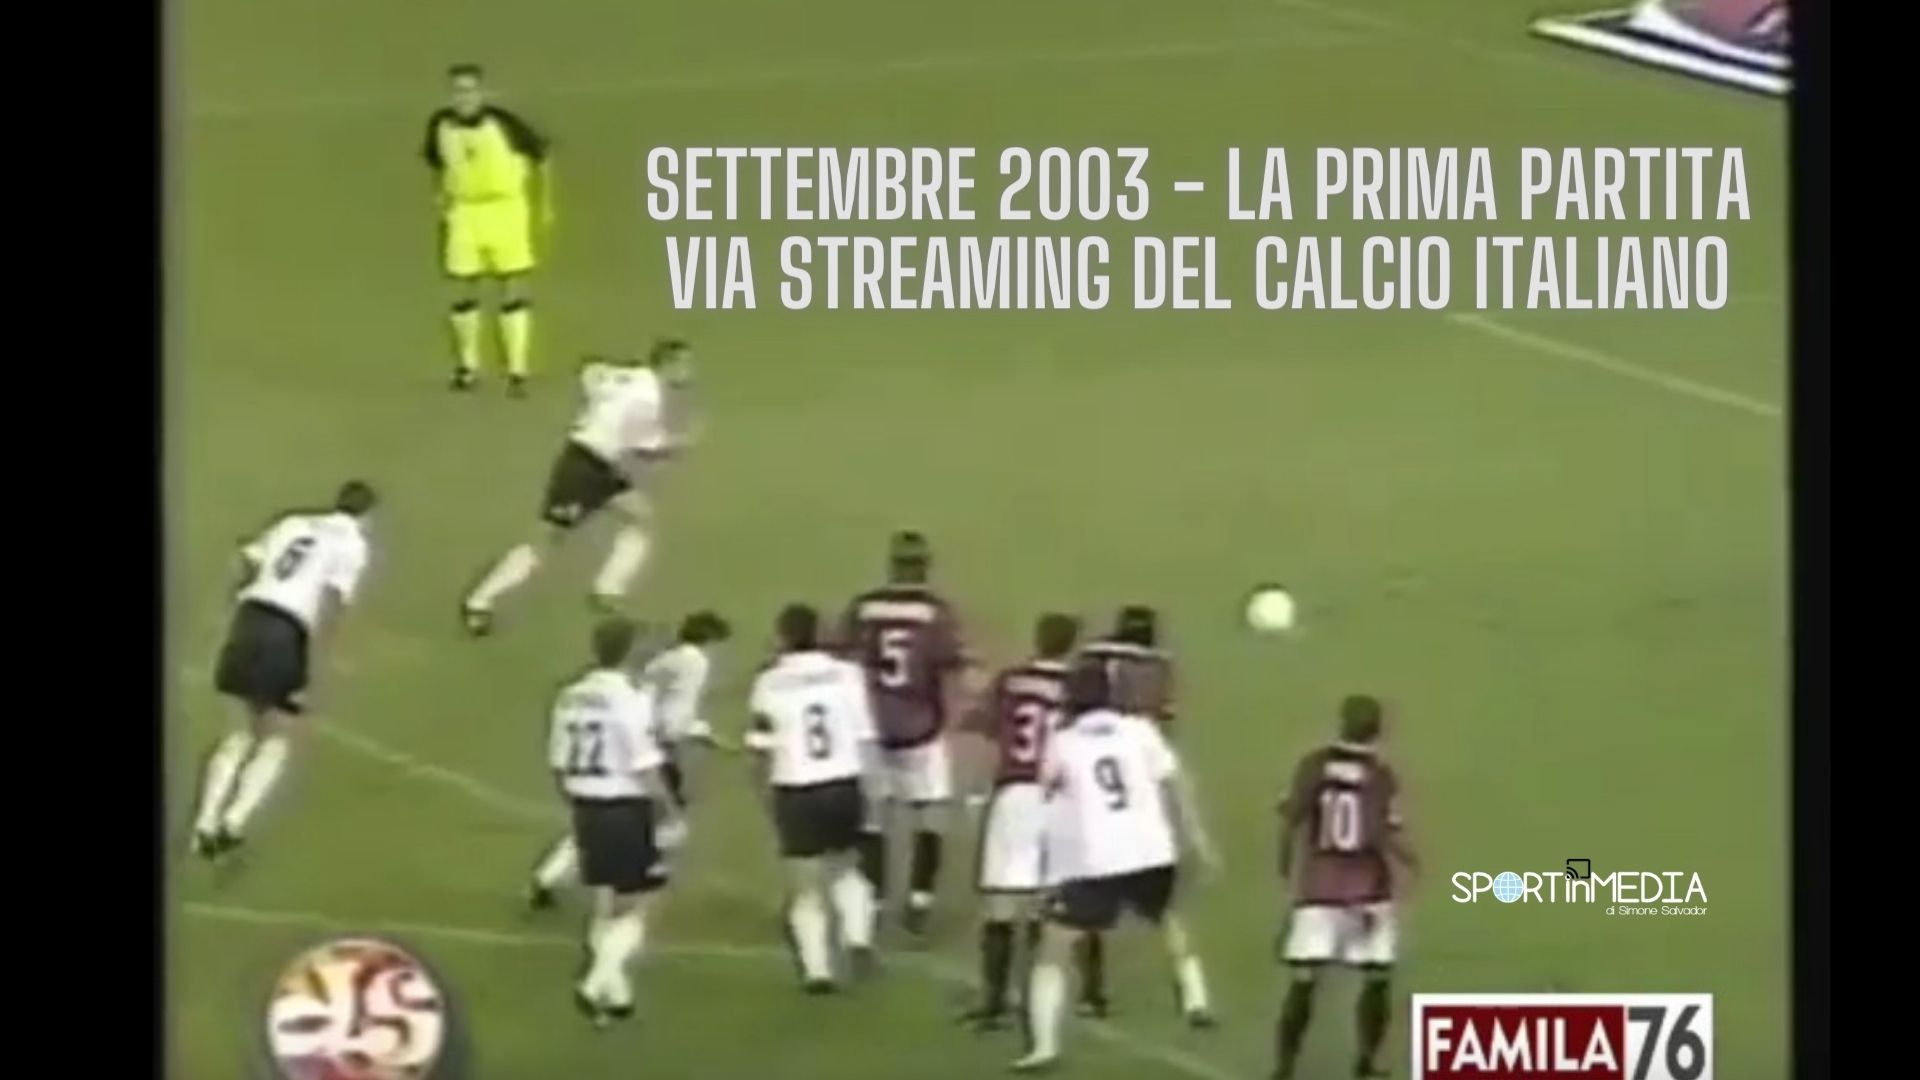 Torino-Palermo 2003_prima partita via streaming calcio italiano